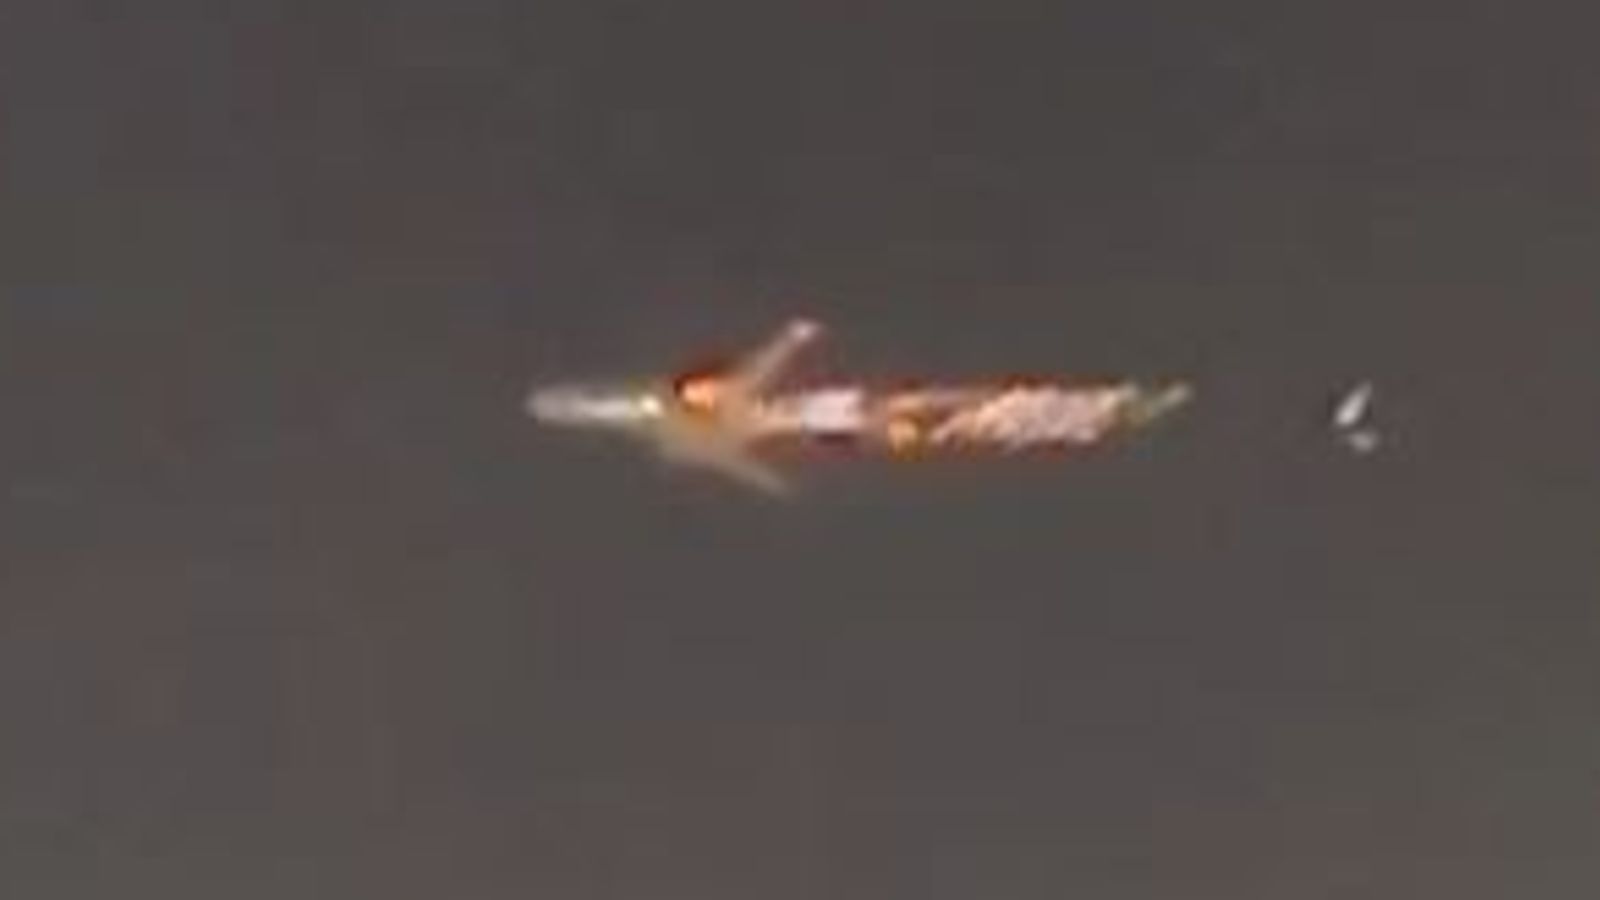 ボーイング747型機から炎が発生した瞬間を映像で捉えている米国のニュース